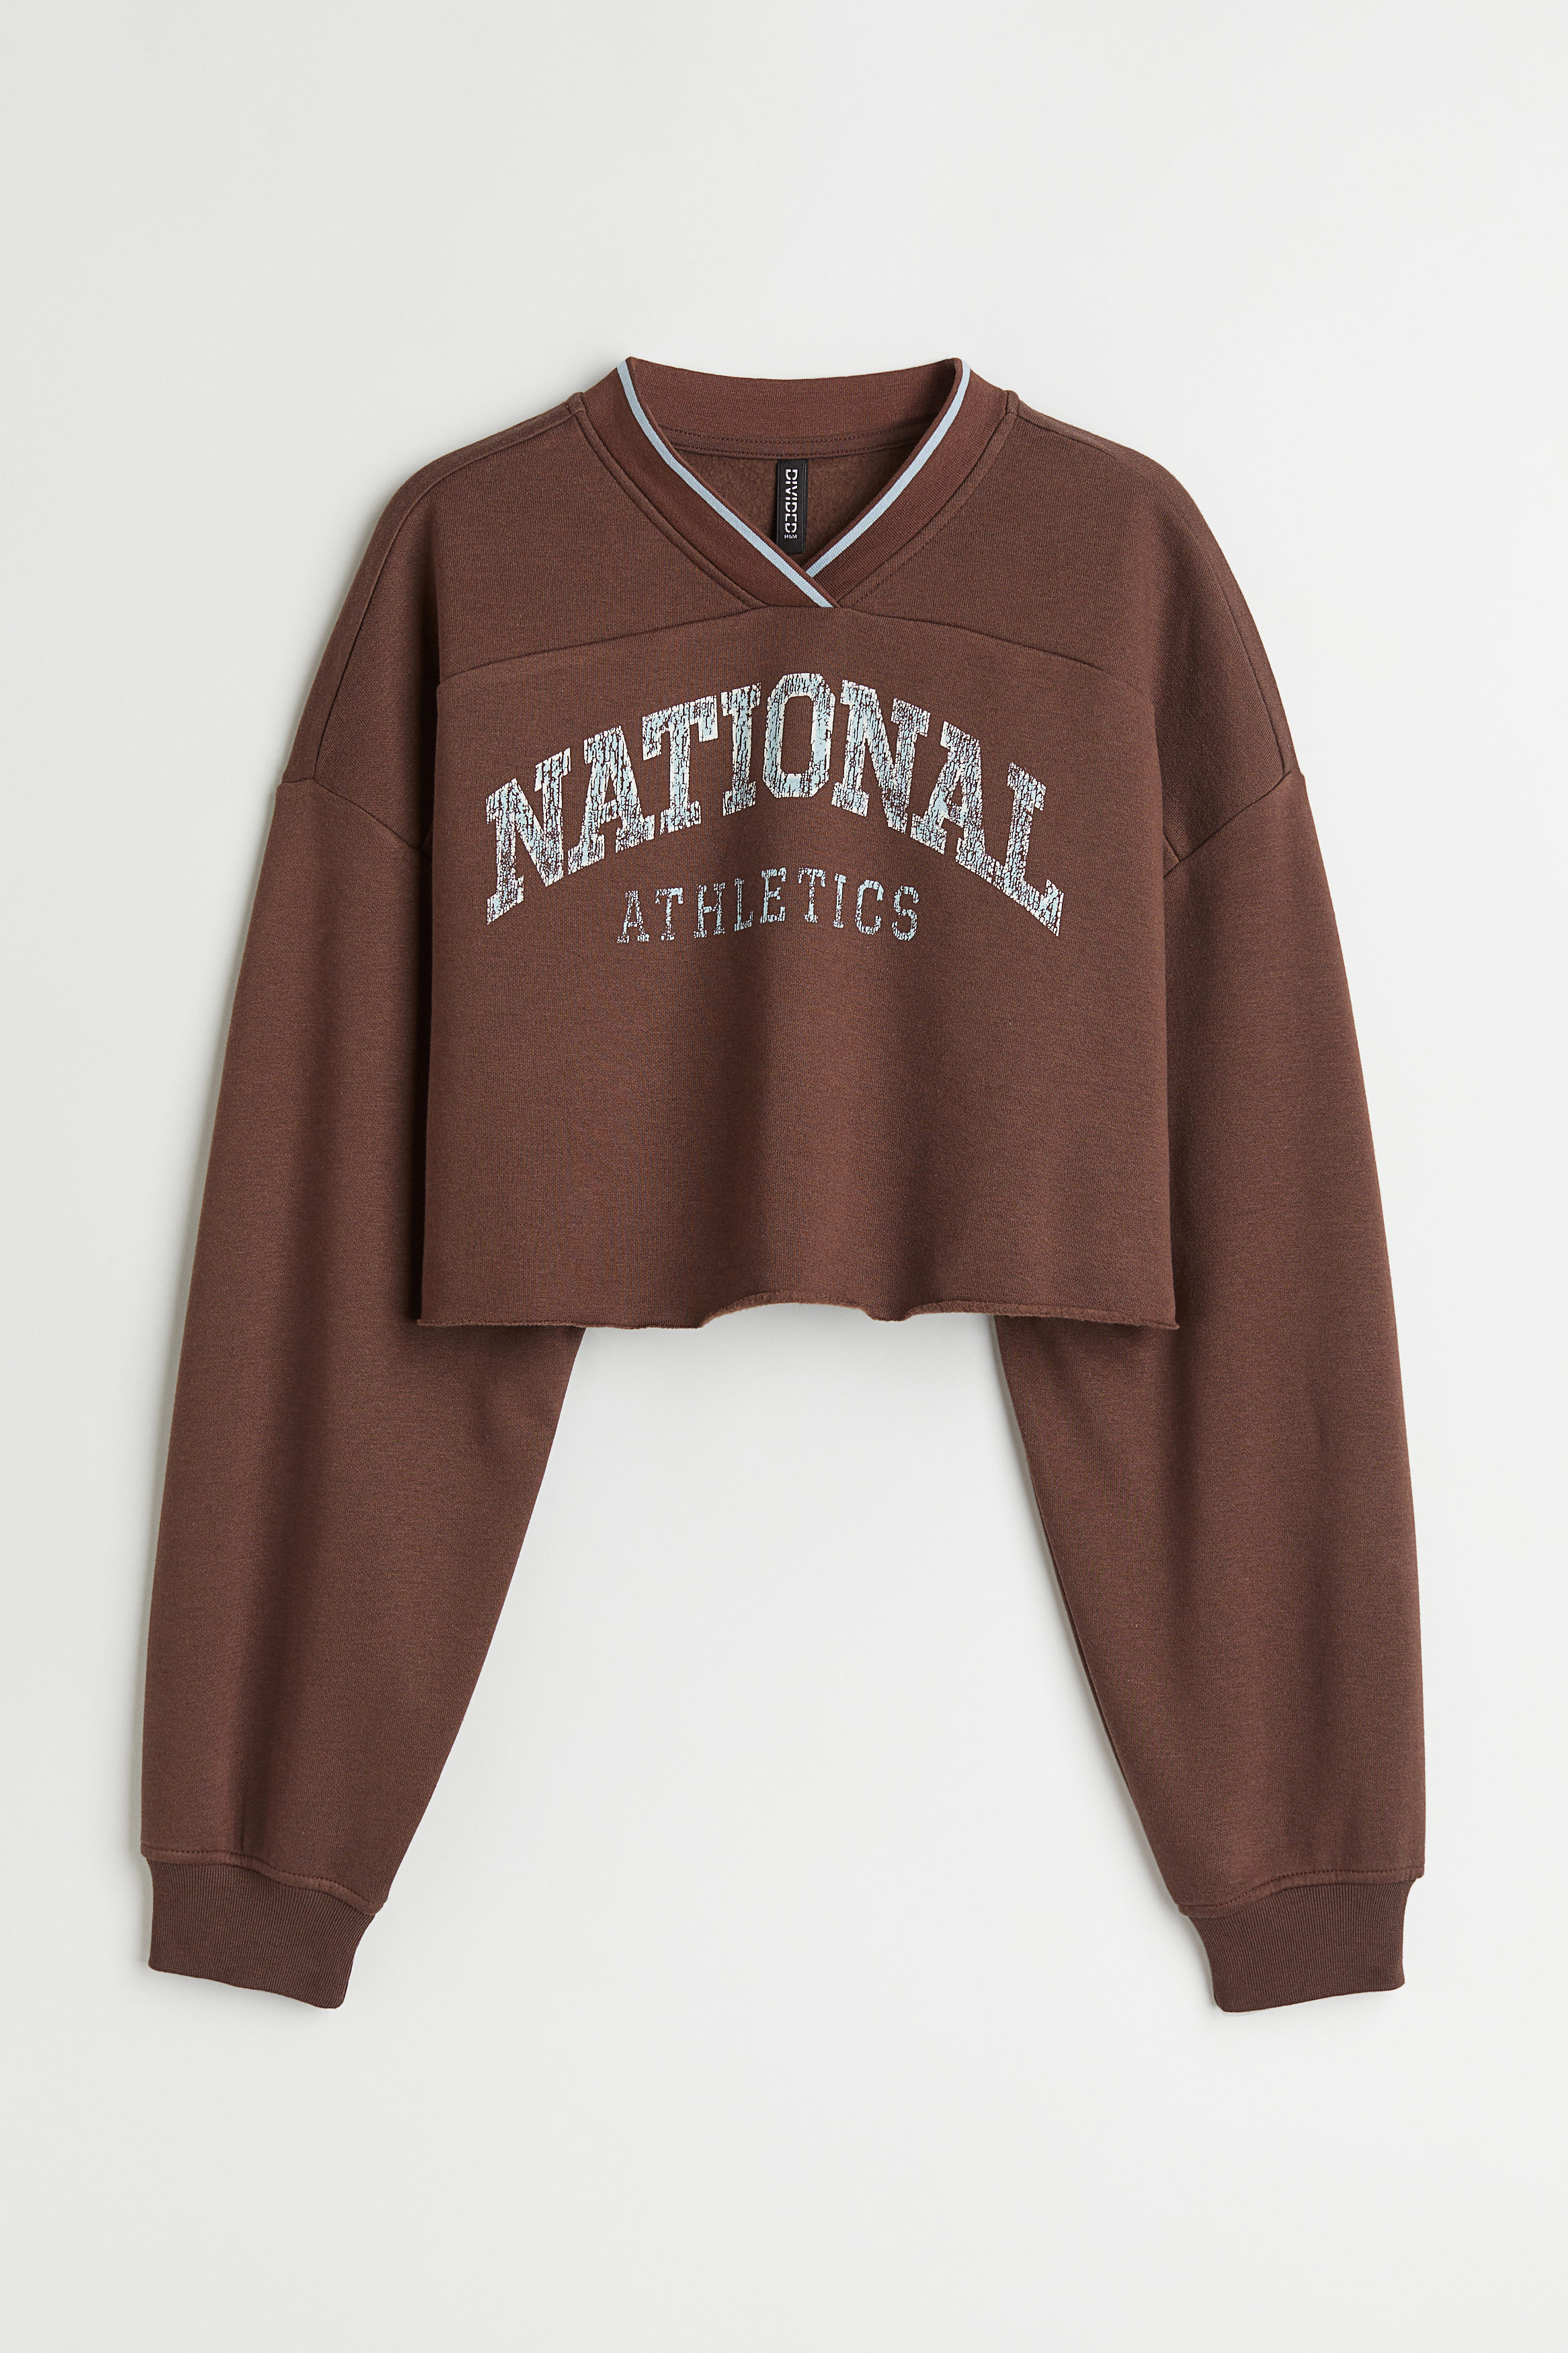 Billede af H&M Cropped Sweatshirt Mørkebrun/national Athletics, Hoodies & Sweatshirts. Farve: Dark brown/national athletics I størrelse M